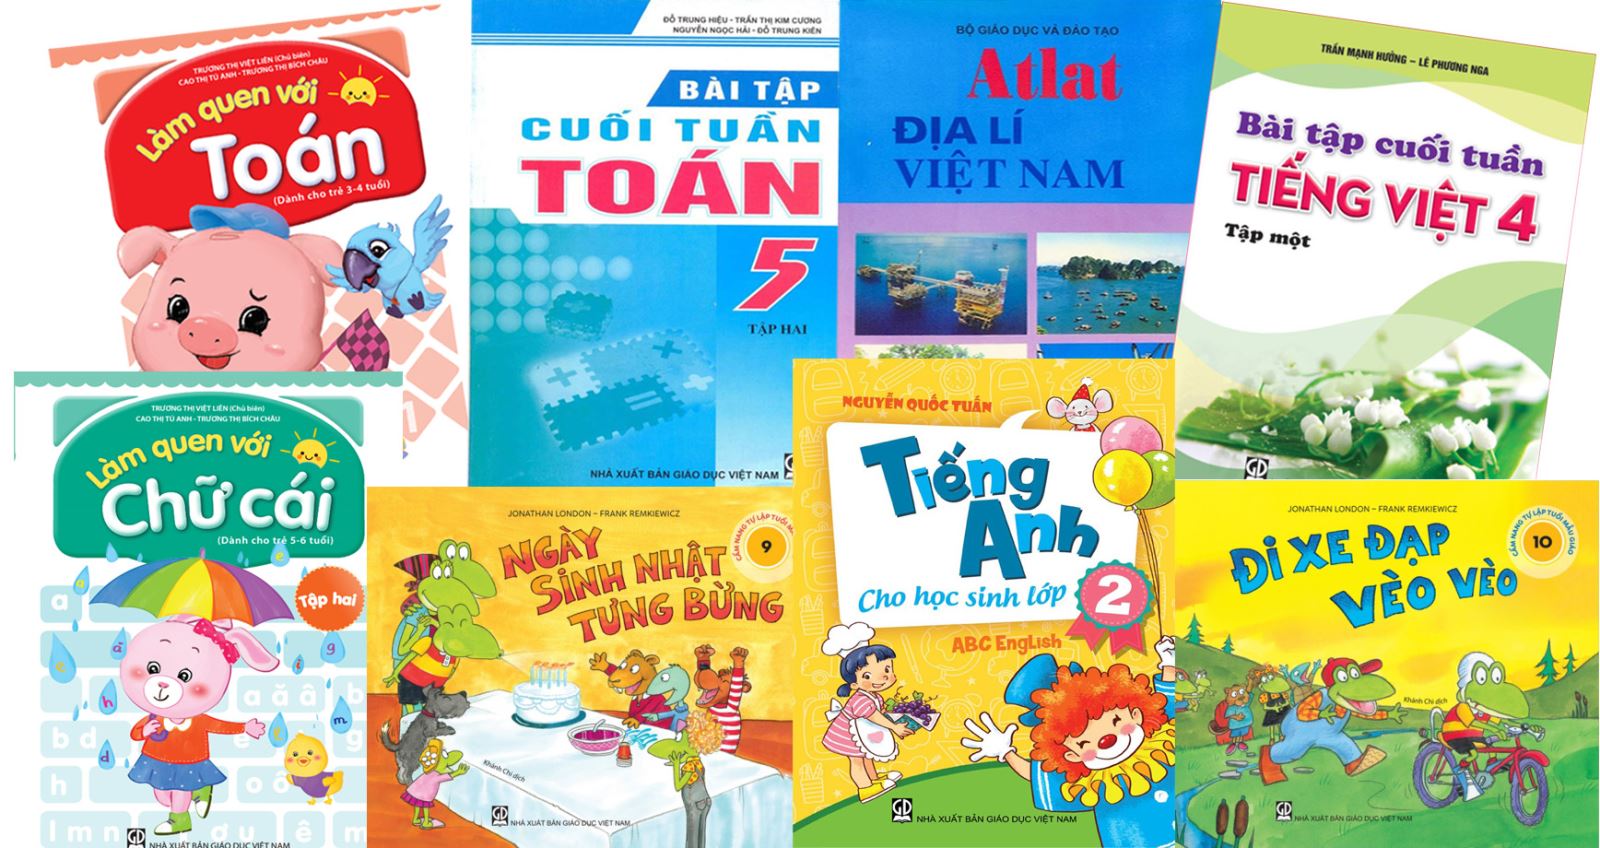 Danh mục sách tham khảo của NXB Giáo dục Việt Nam phát hành tháng 1 và tháng 2 năm 2020